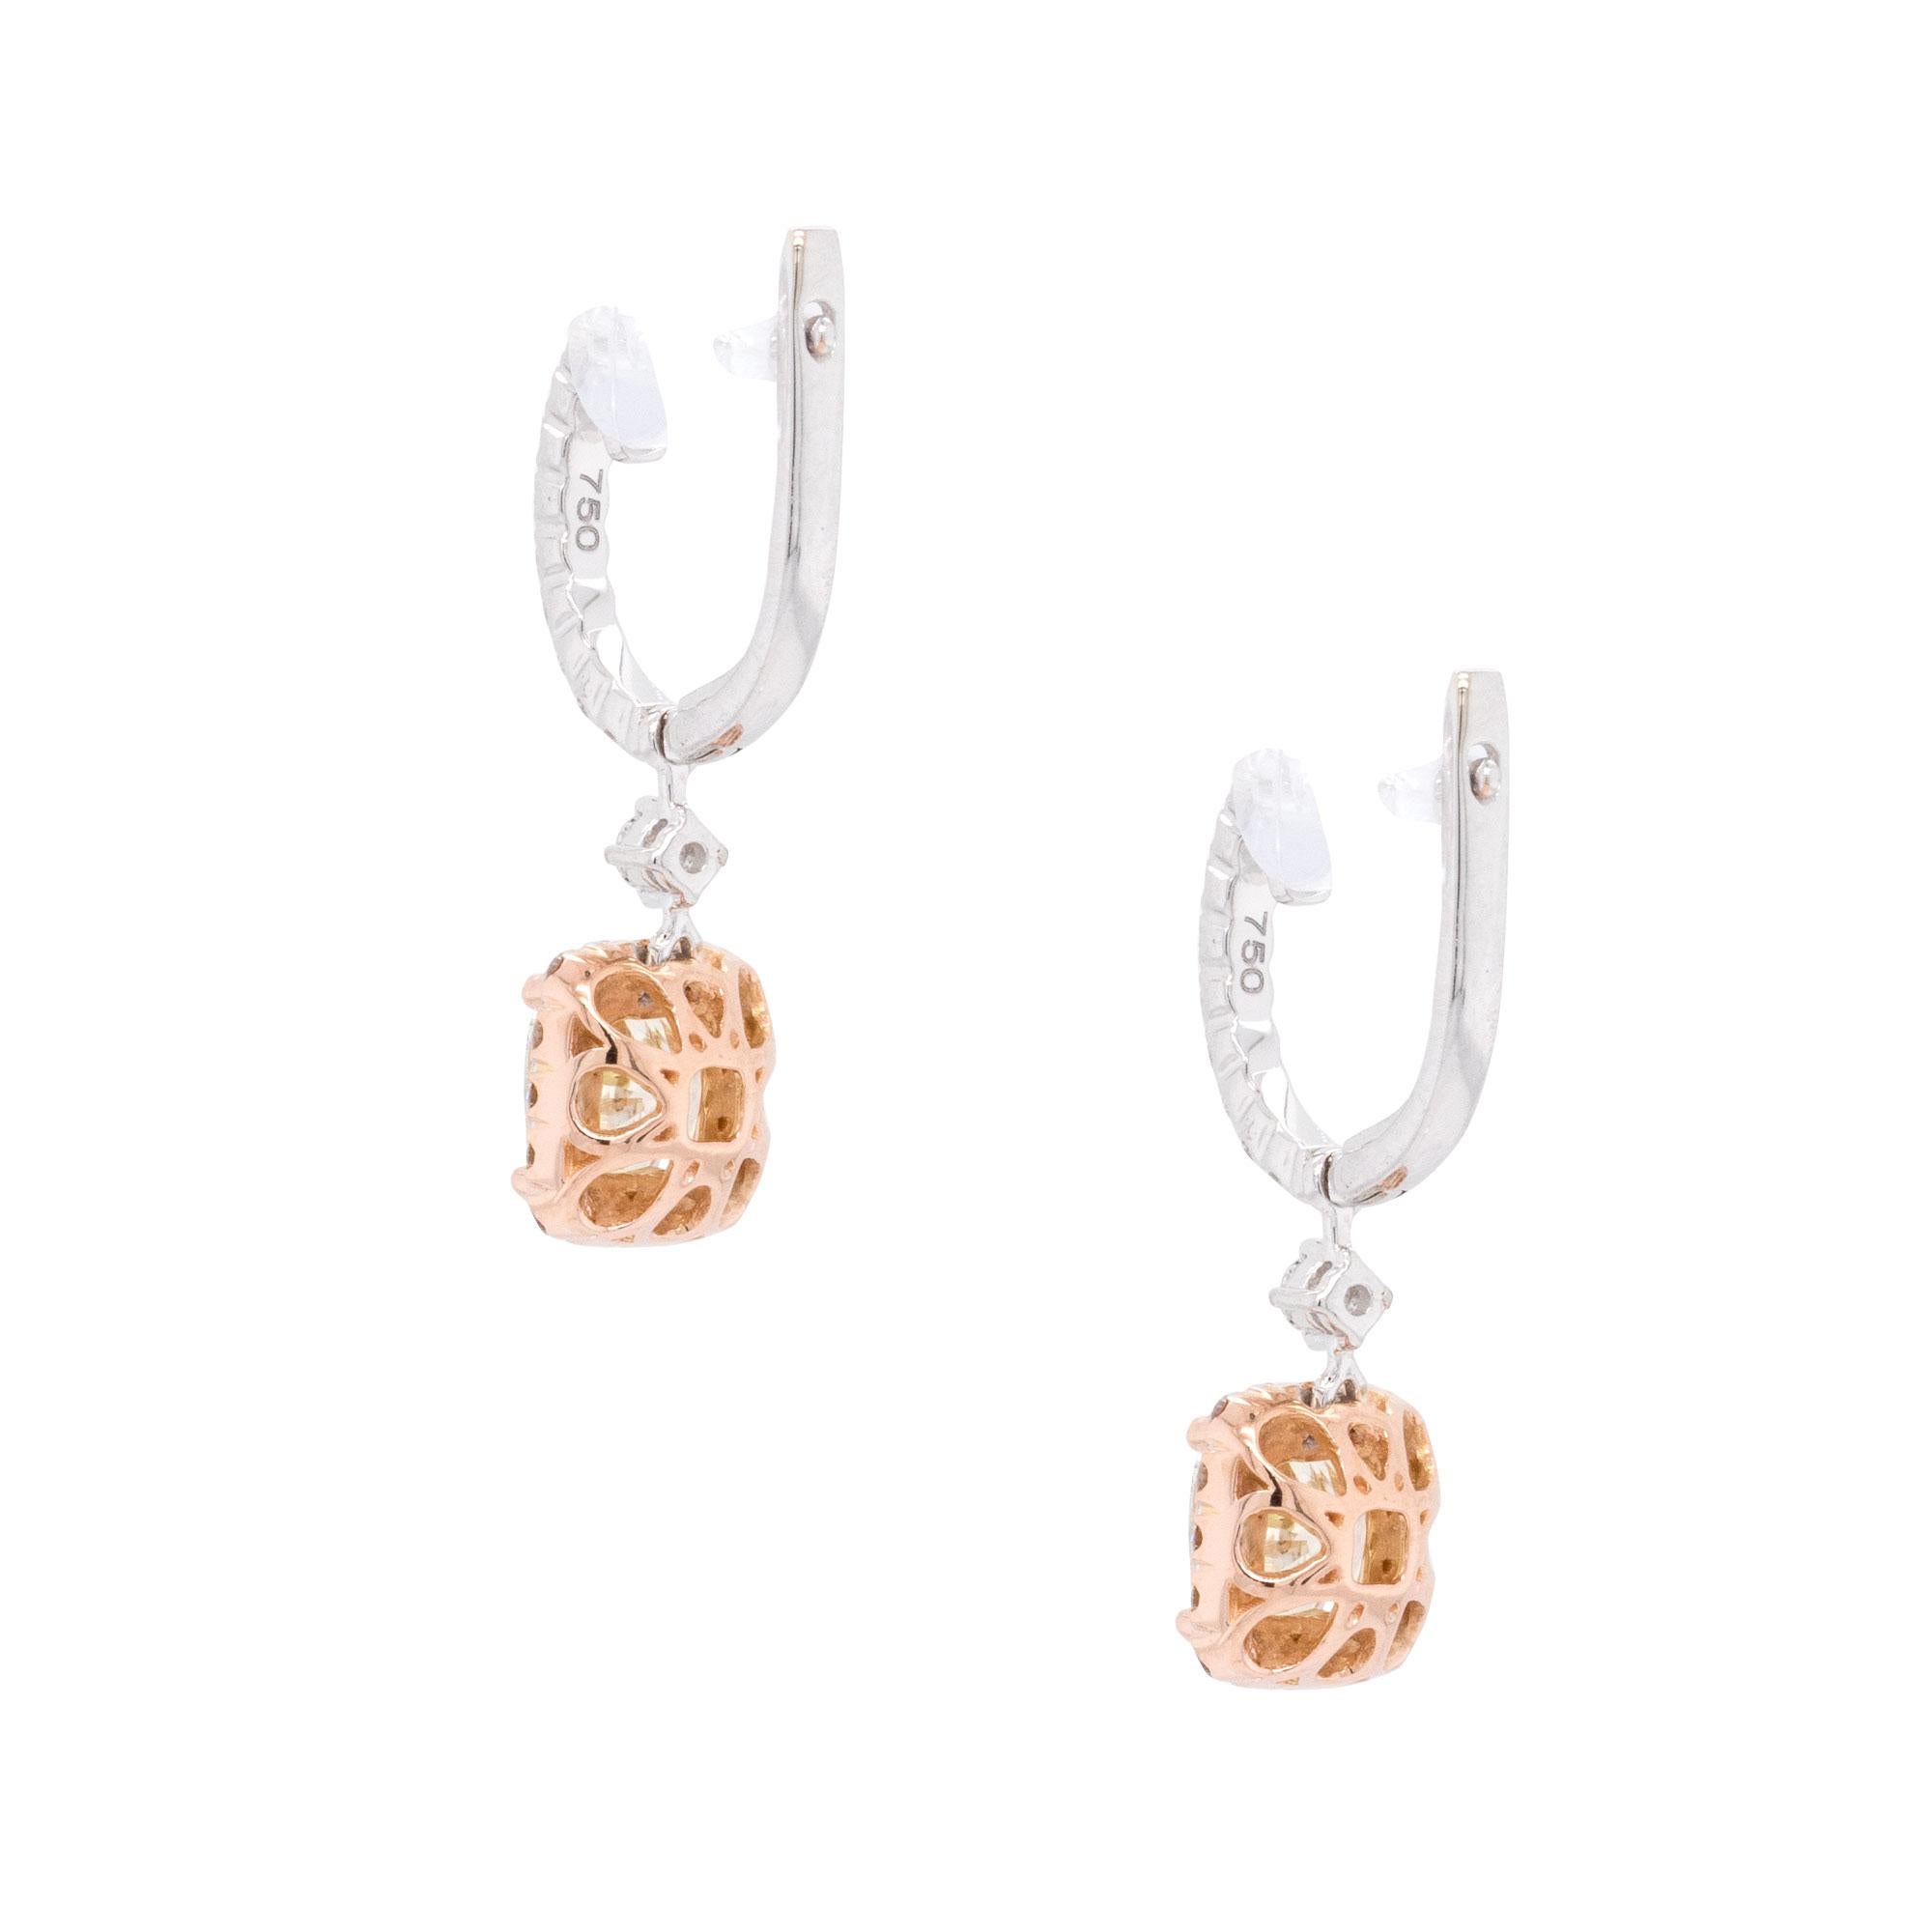 2 Carat GIA Certified Cushion Cut Diamond Dangle Earrings For Sale 1